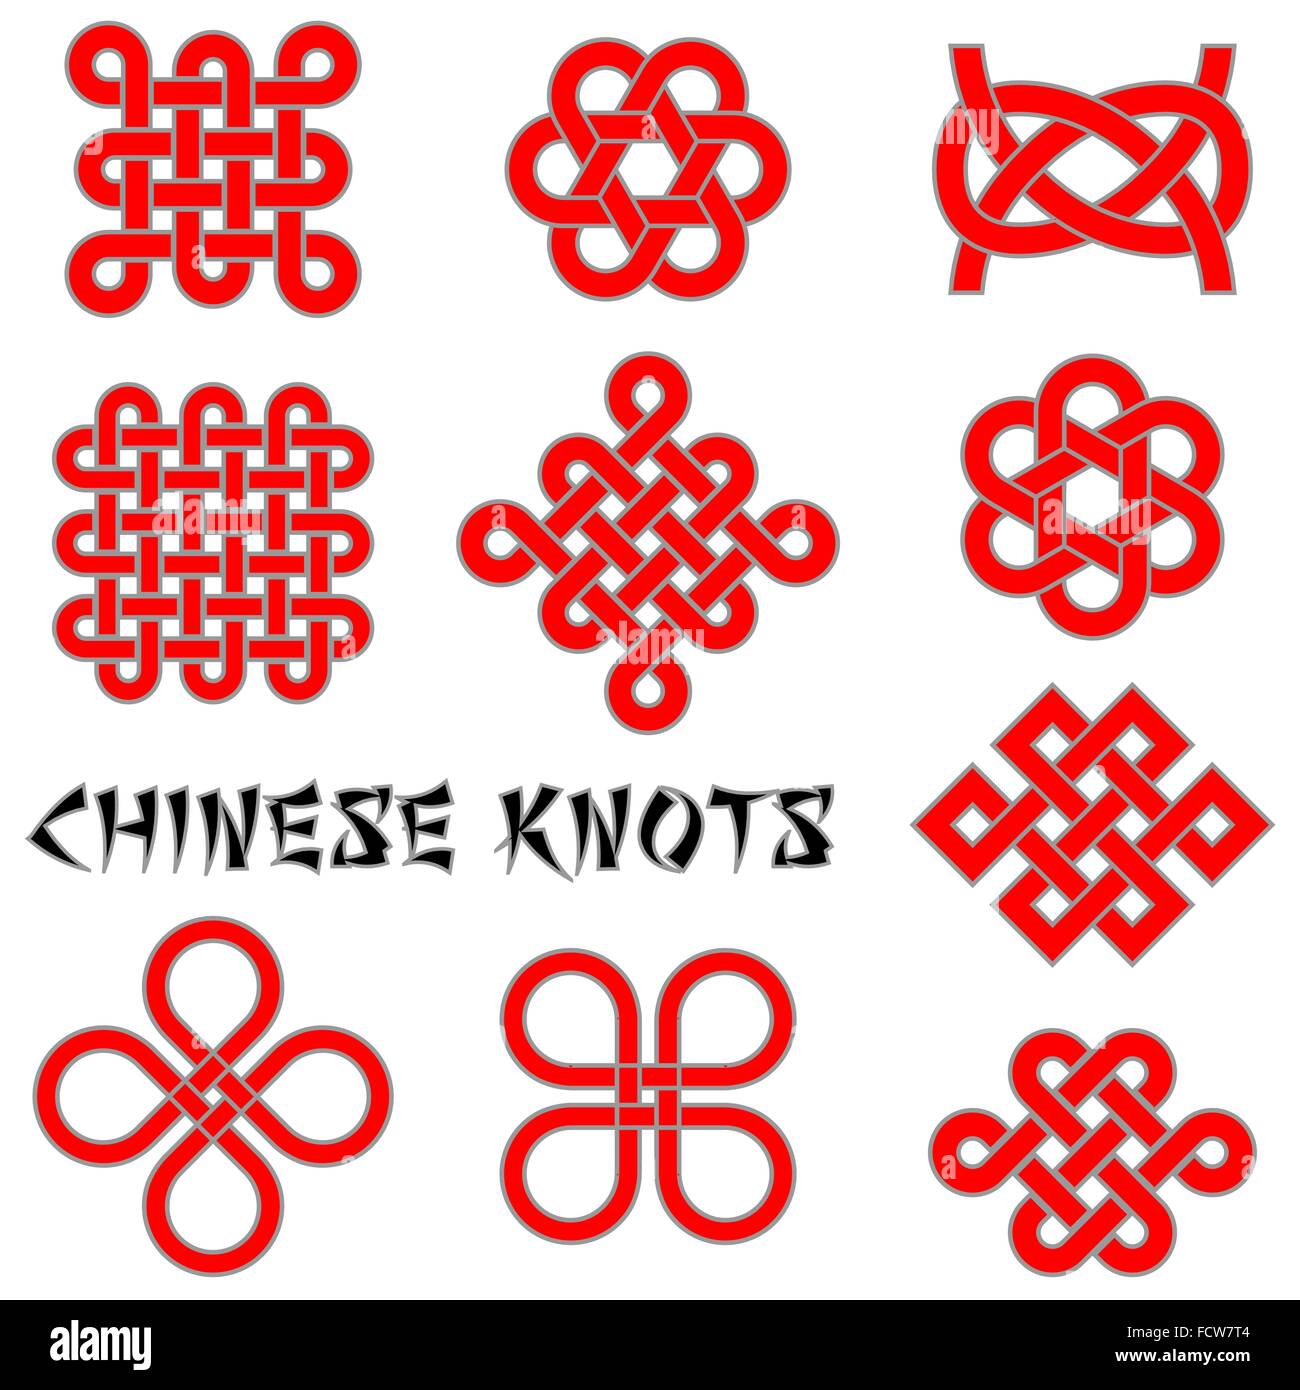 Cinese (nodi foglia di trifoglio, fiore nodo, il nodo senza fine, ecc.) insieme al vostro disegno o progetto Illustrazione Vettoriale